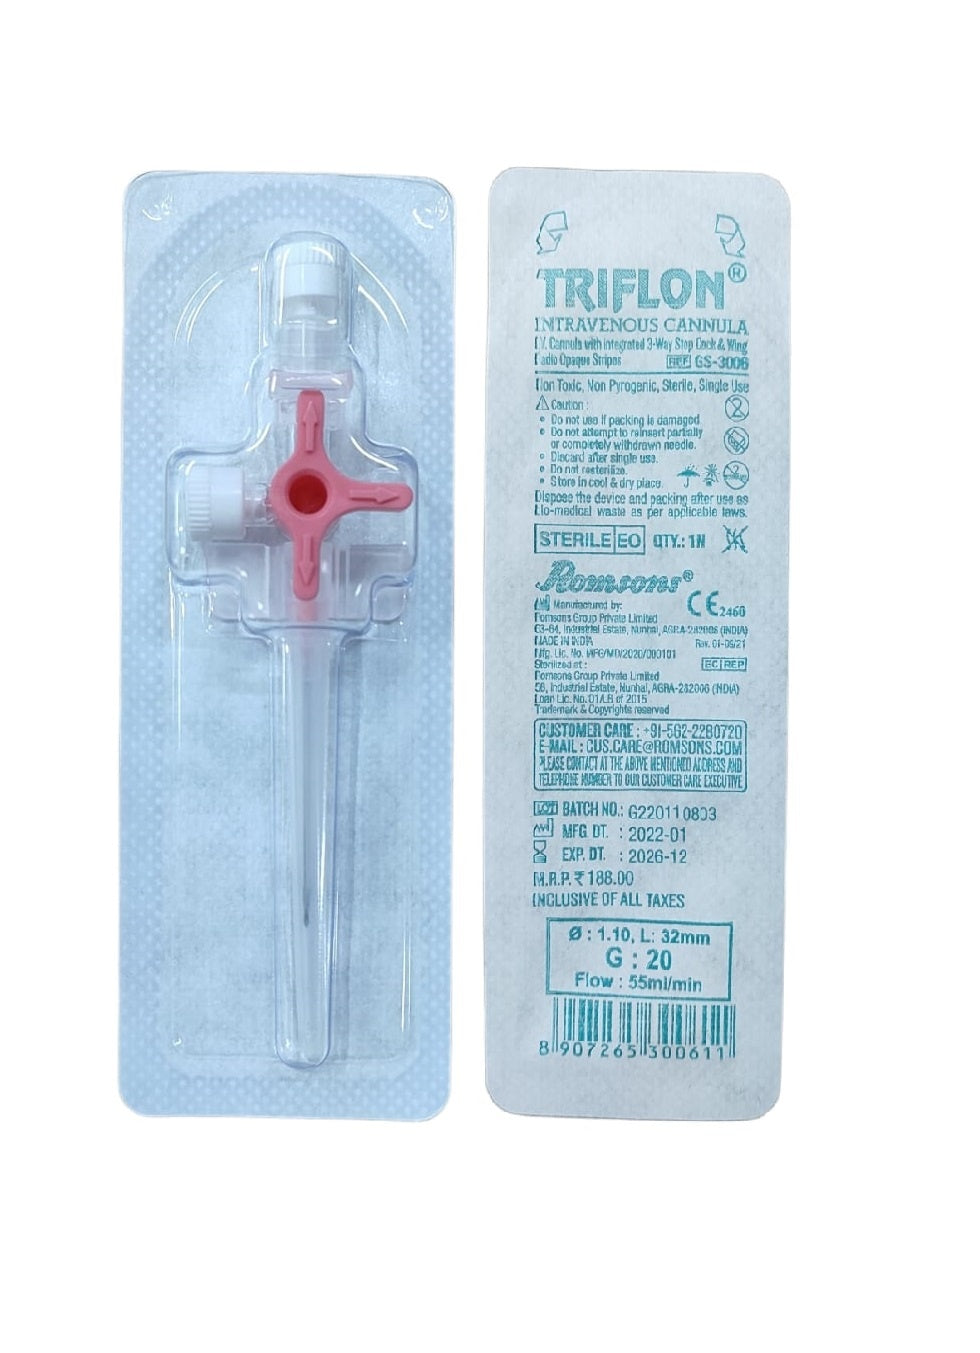 Romsons Triflon Intravenous Sterile Cannula GS-3006